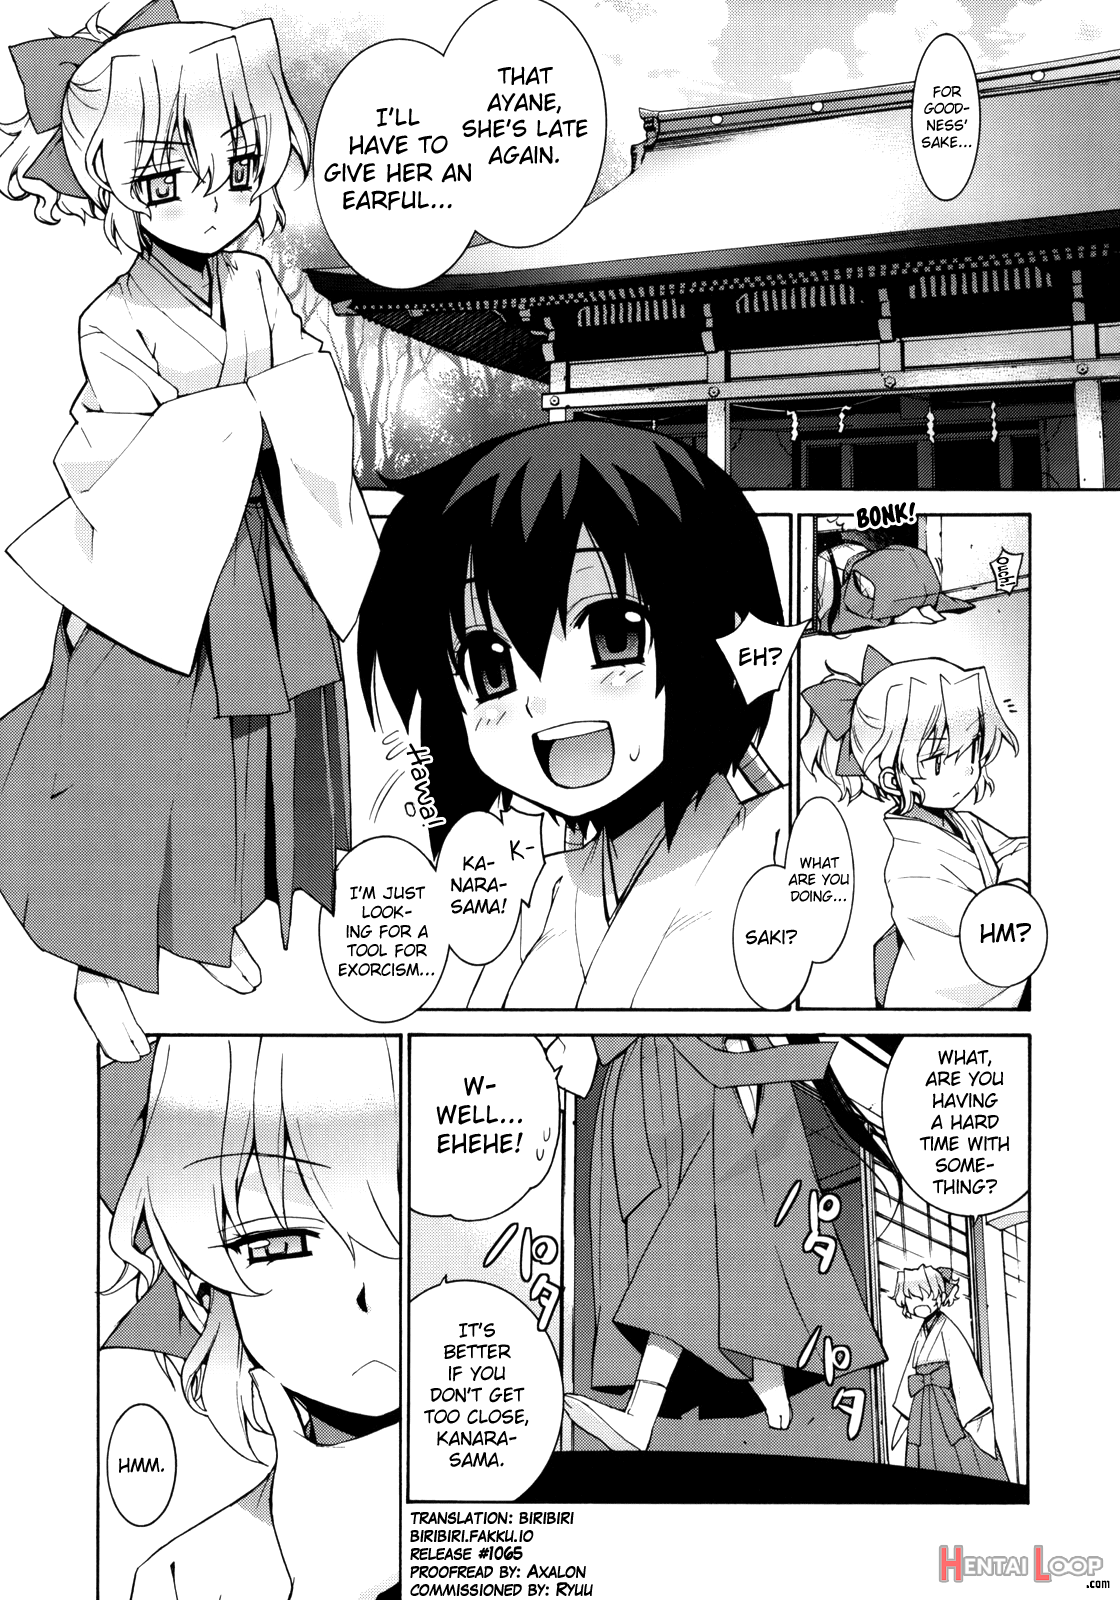 Kanara-sama No Nichijou 2 page 2